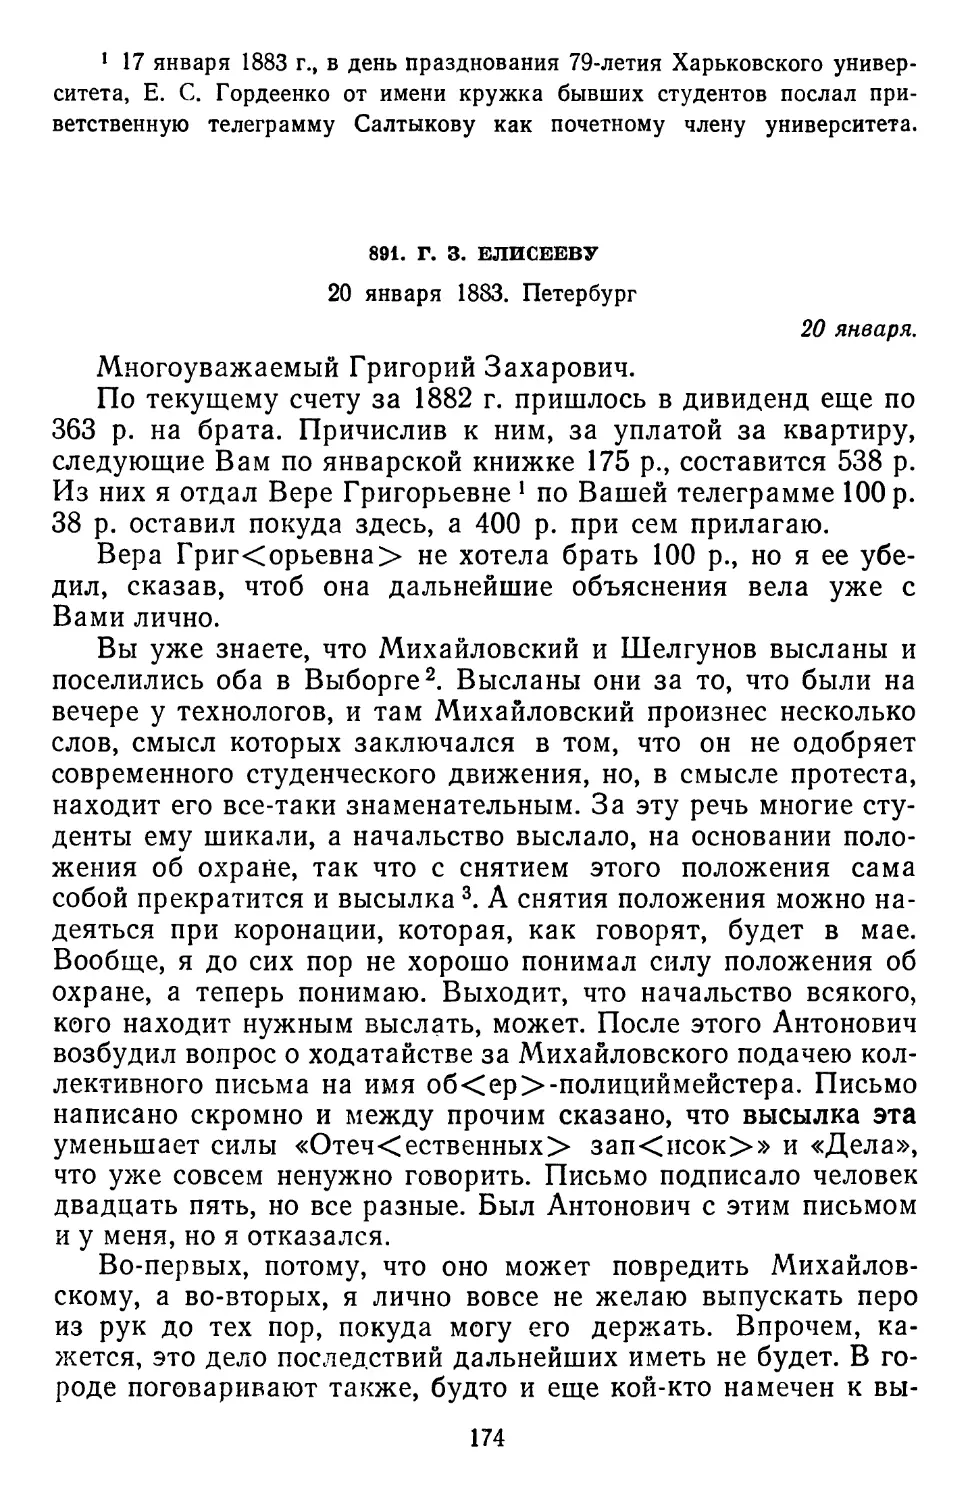 891.Г. 3. Елисееву. 20 января 1883. Петербург  .